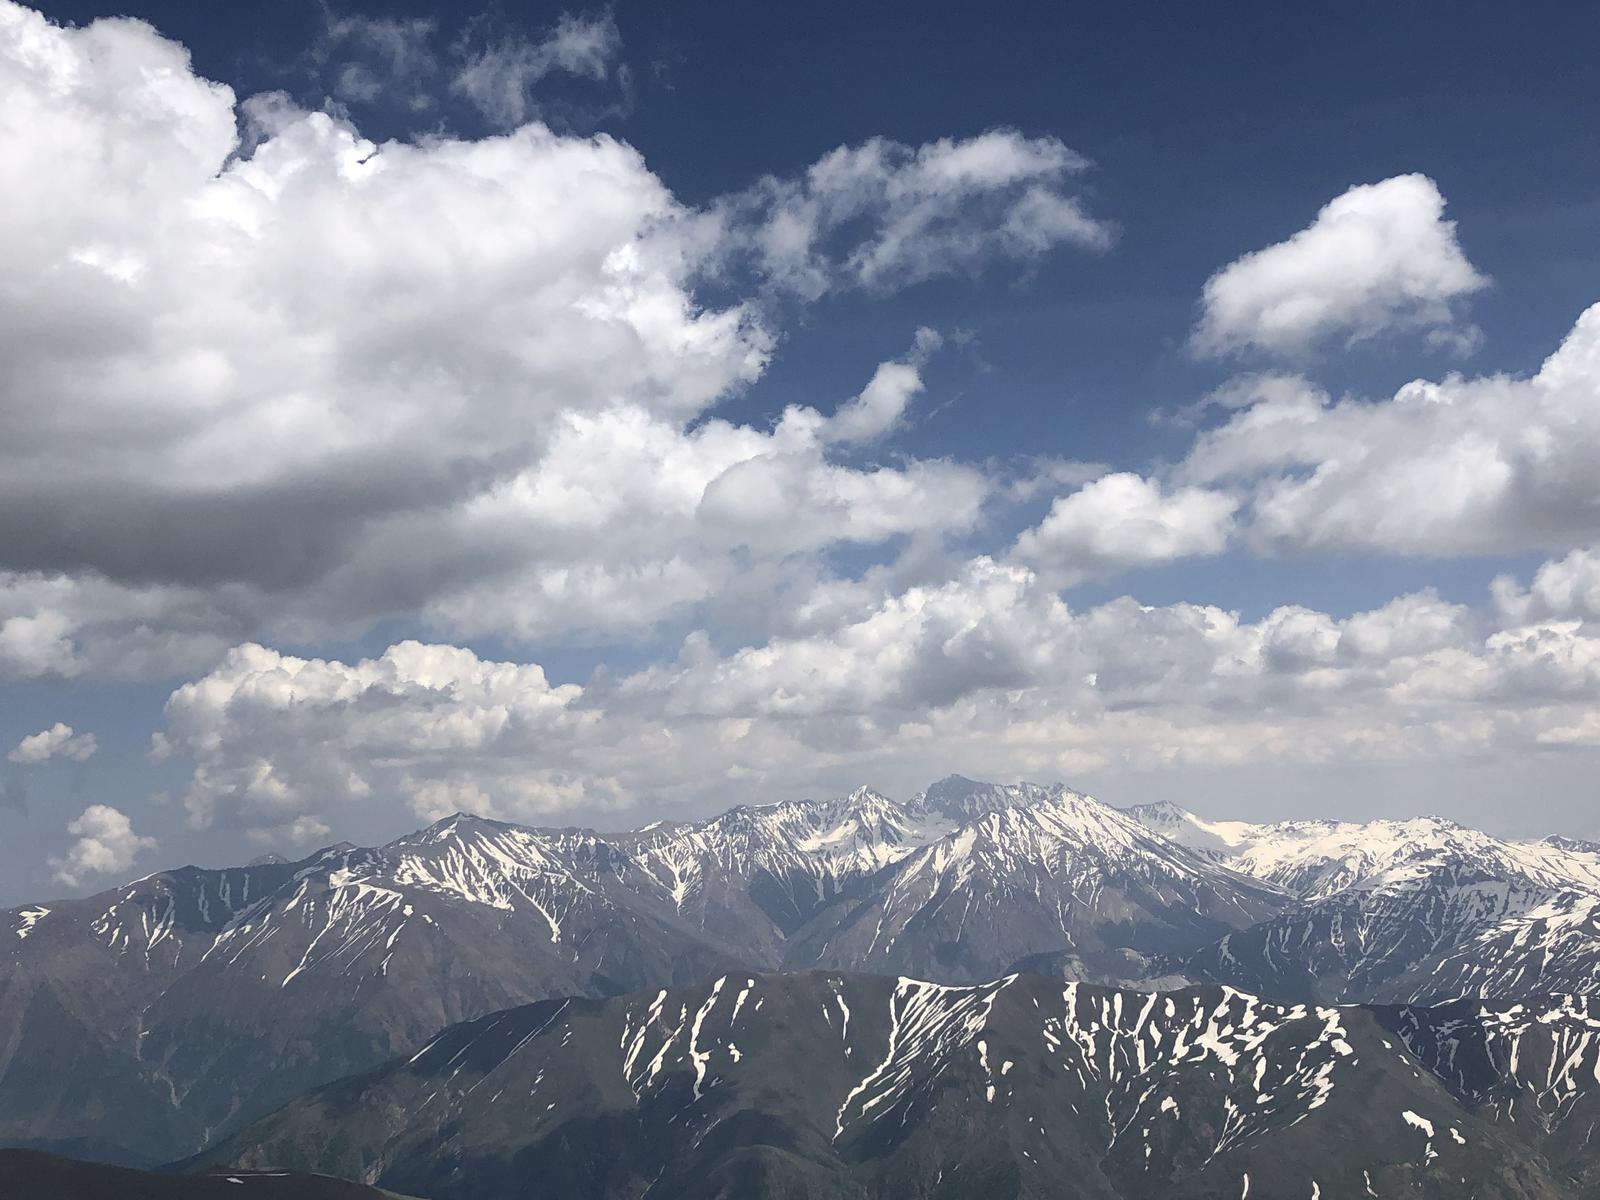 کوهستان البرز از قله سیالان, View of Alborz Mountains from Sialan Peak